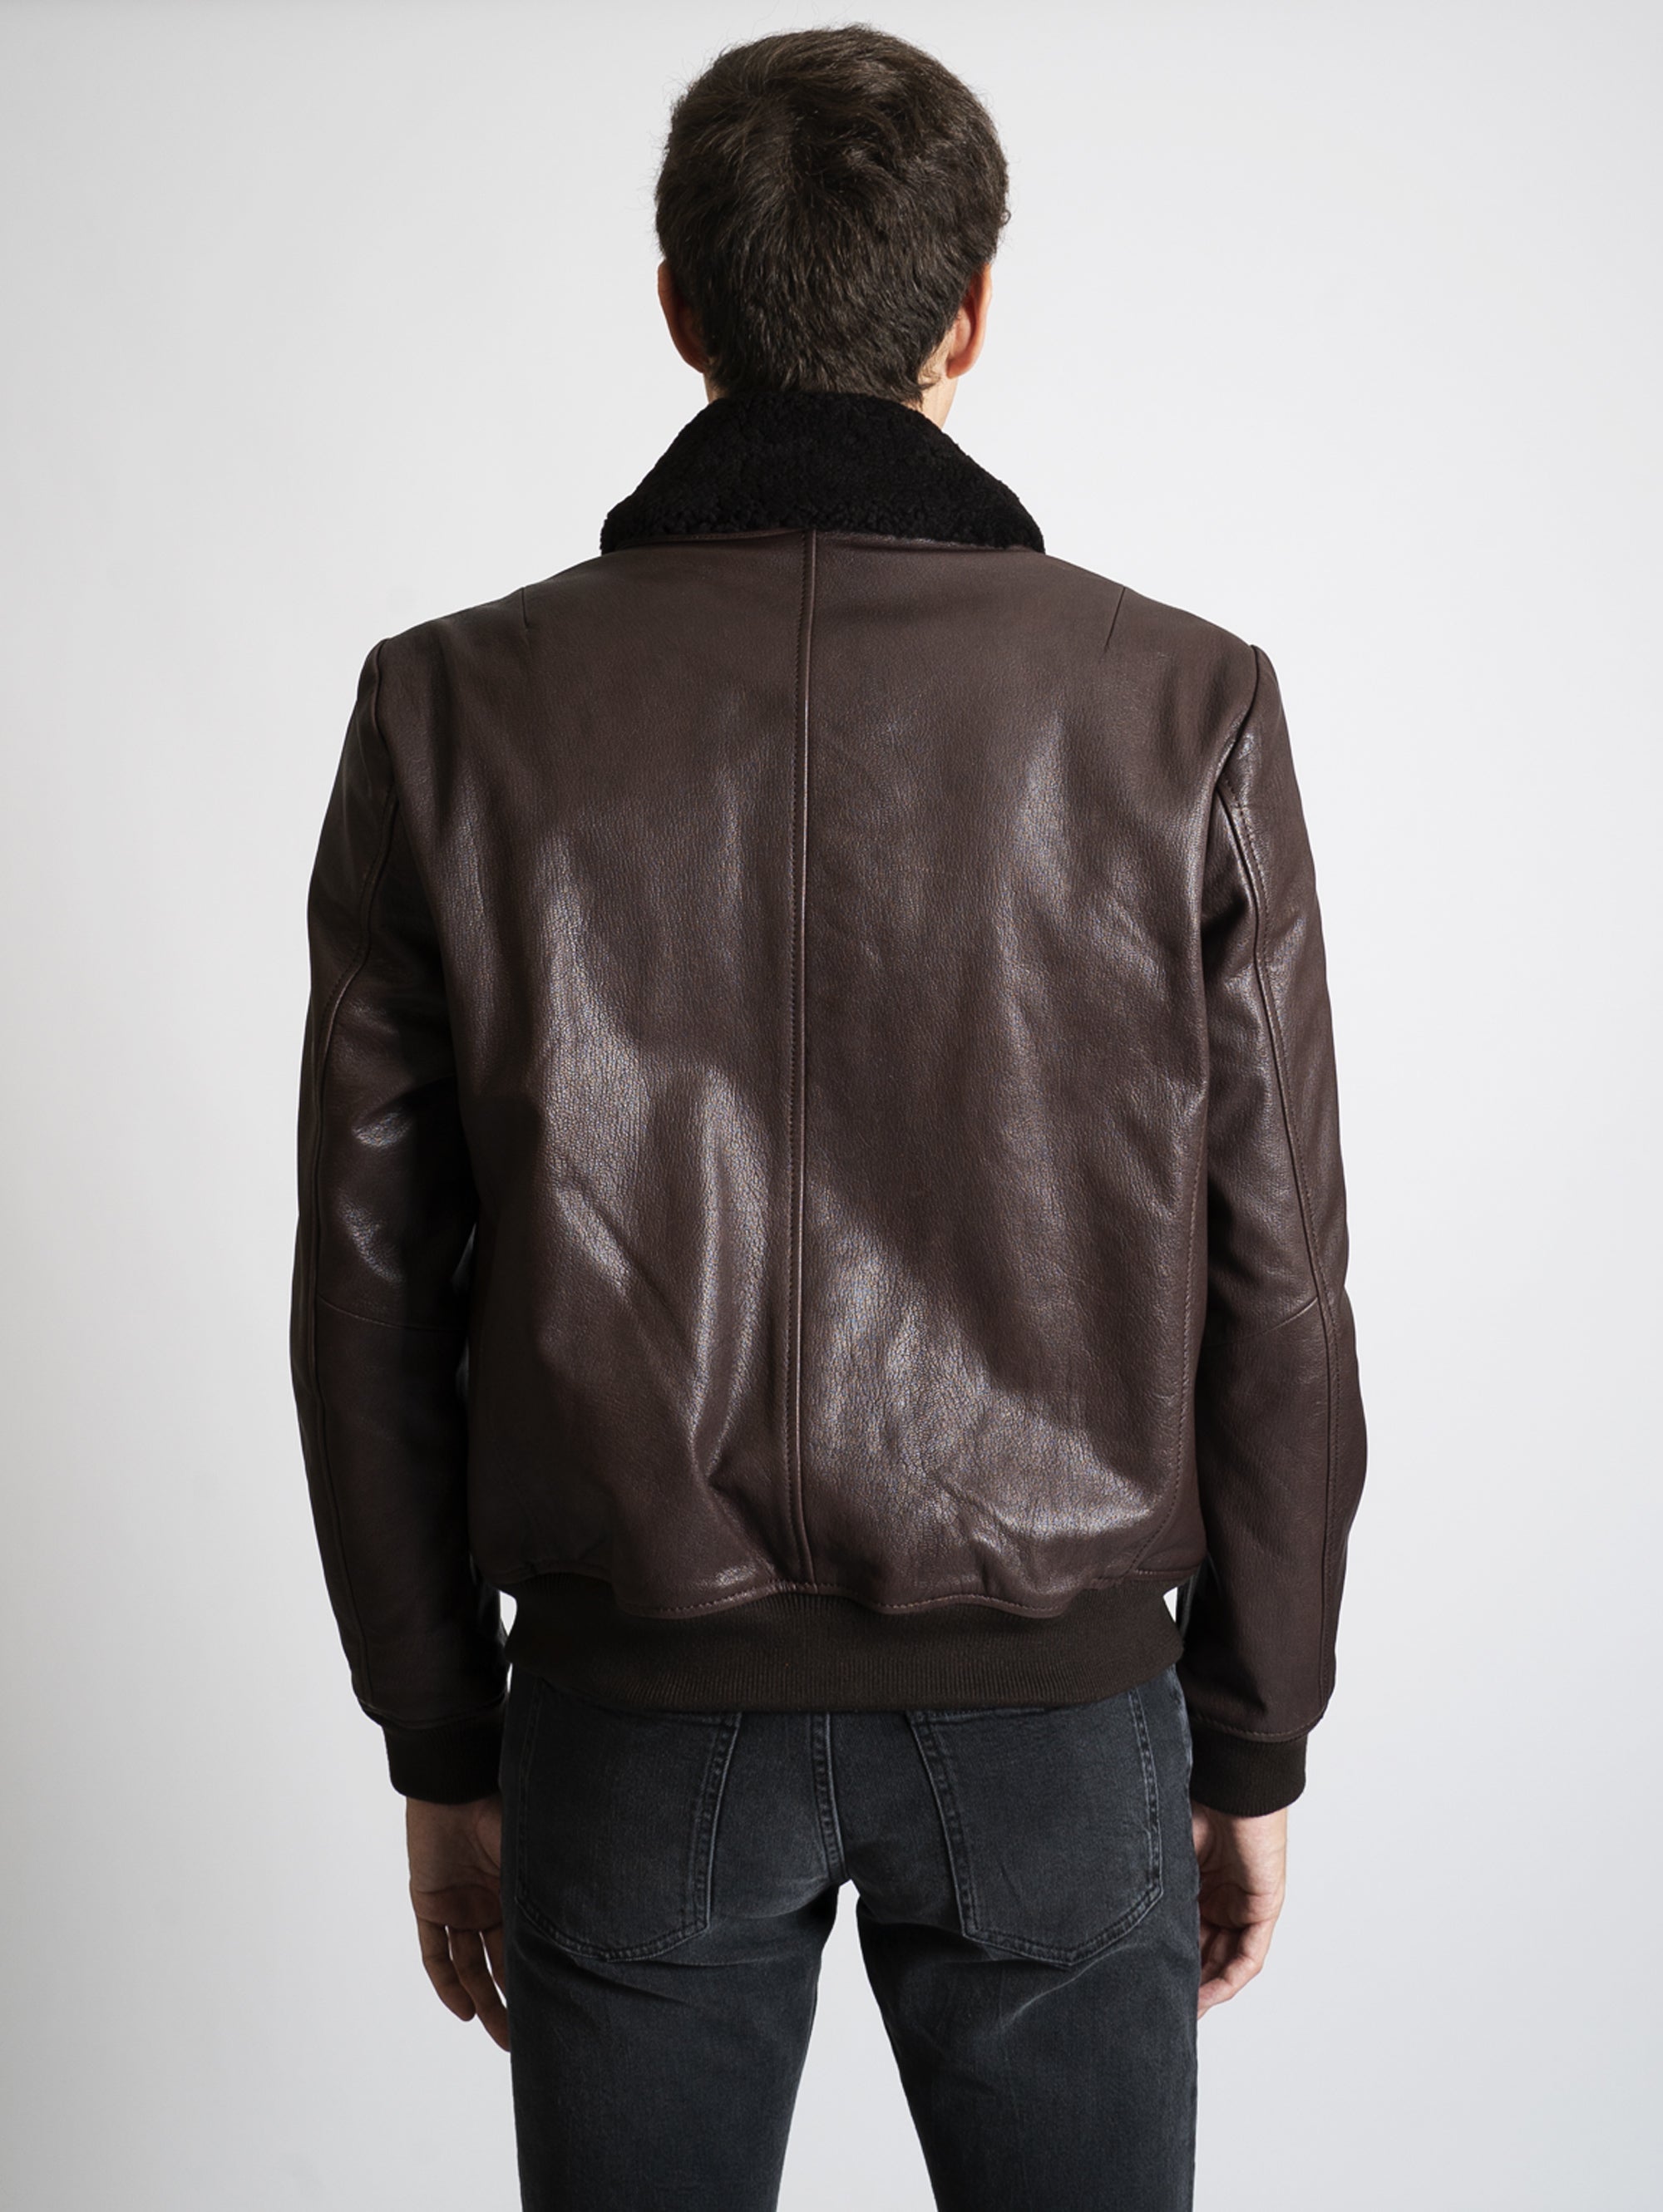 Leather jacket with dark brown sheepskin collar